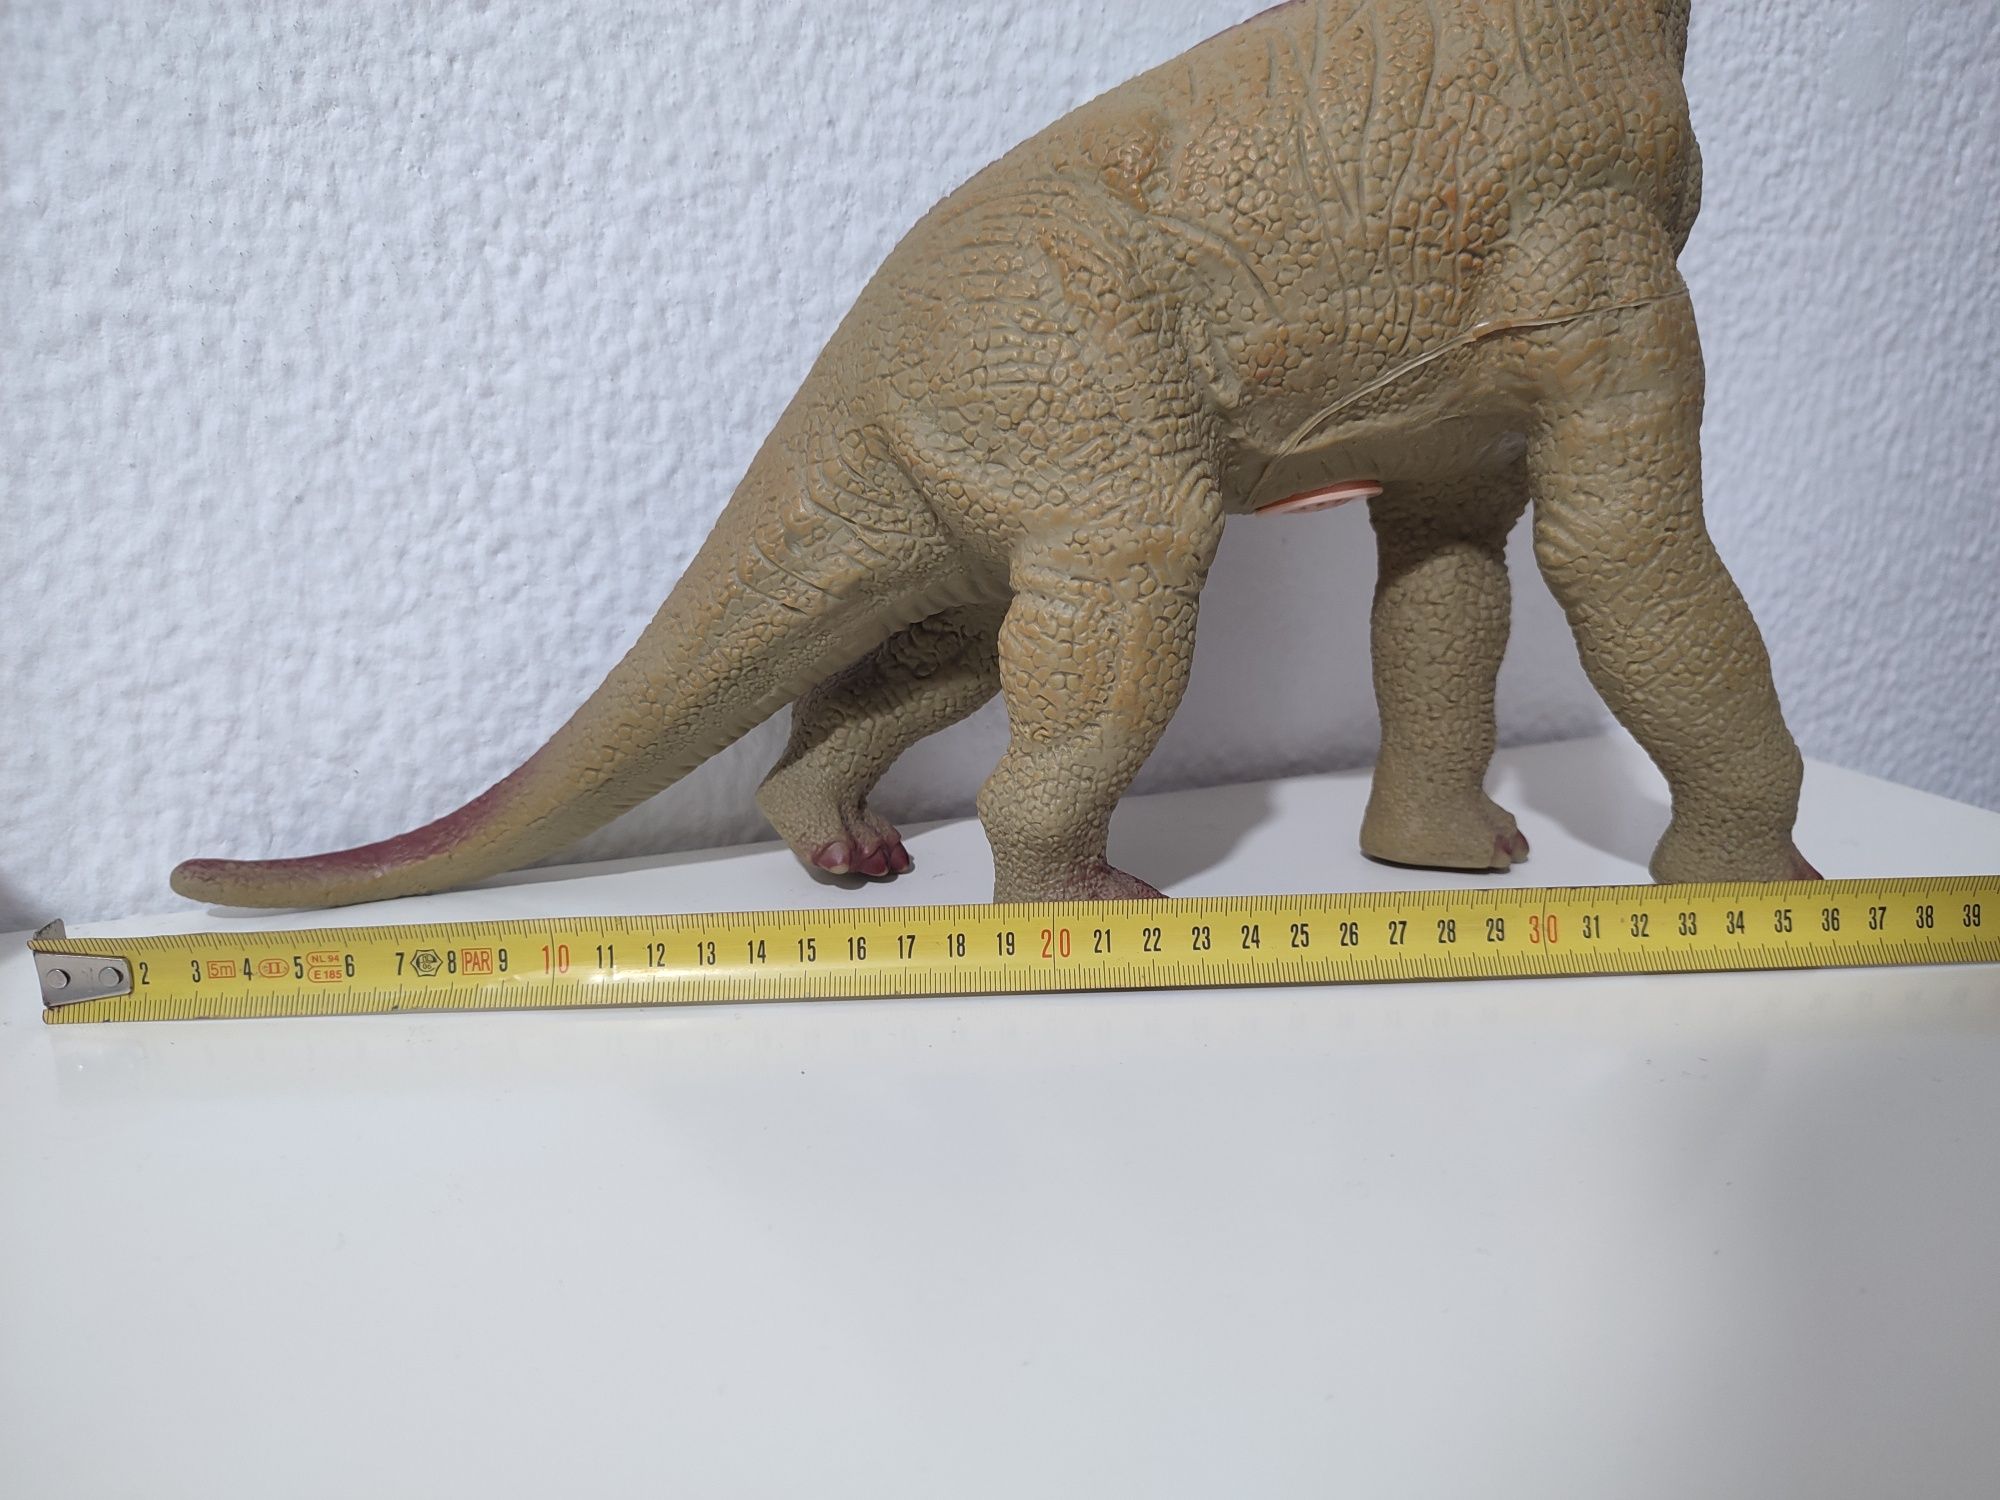 Dinossauro gigante brinquedo (emite som)